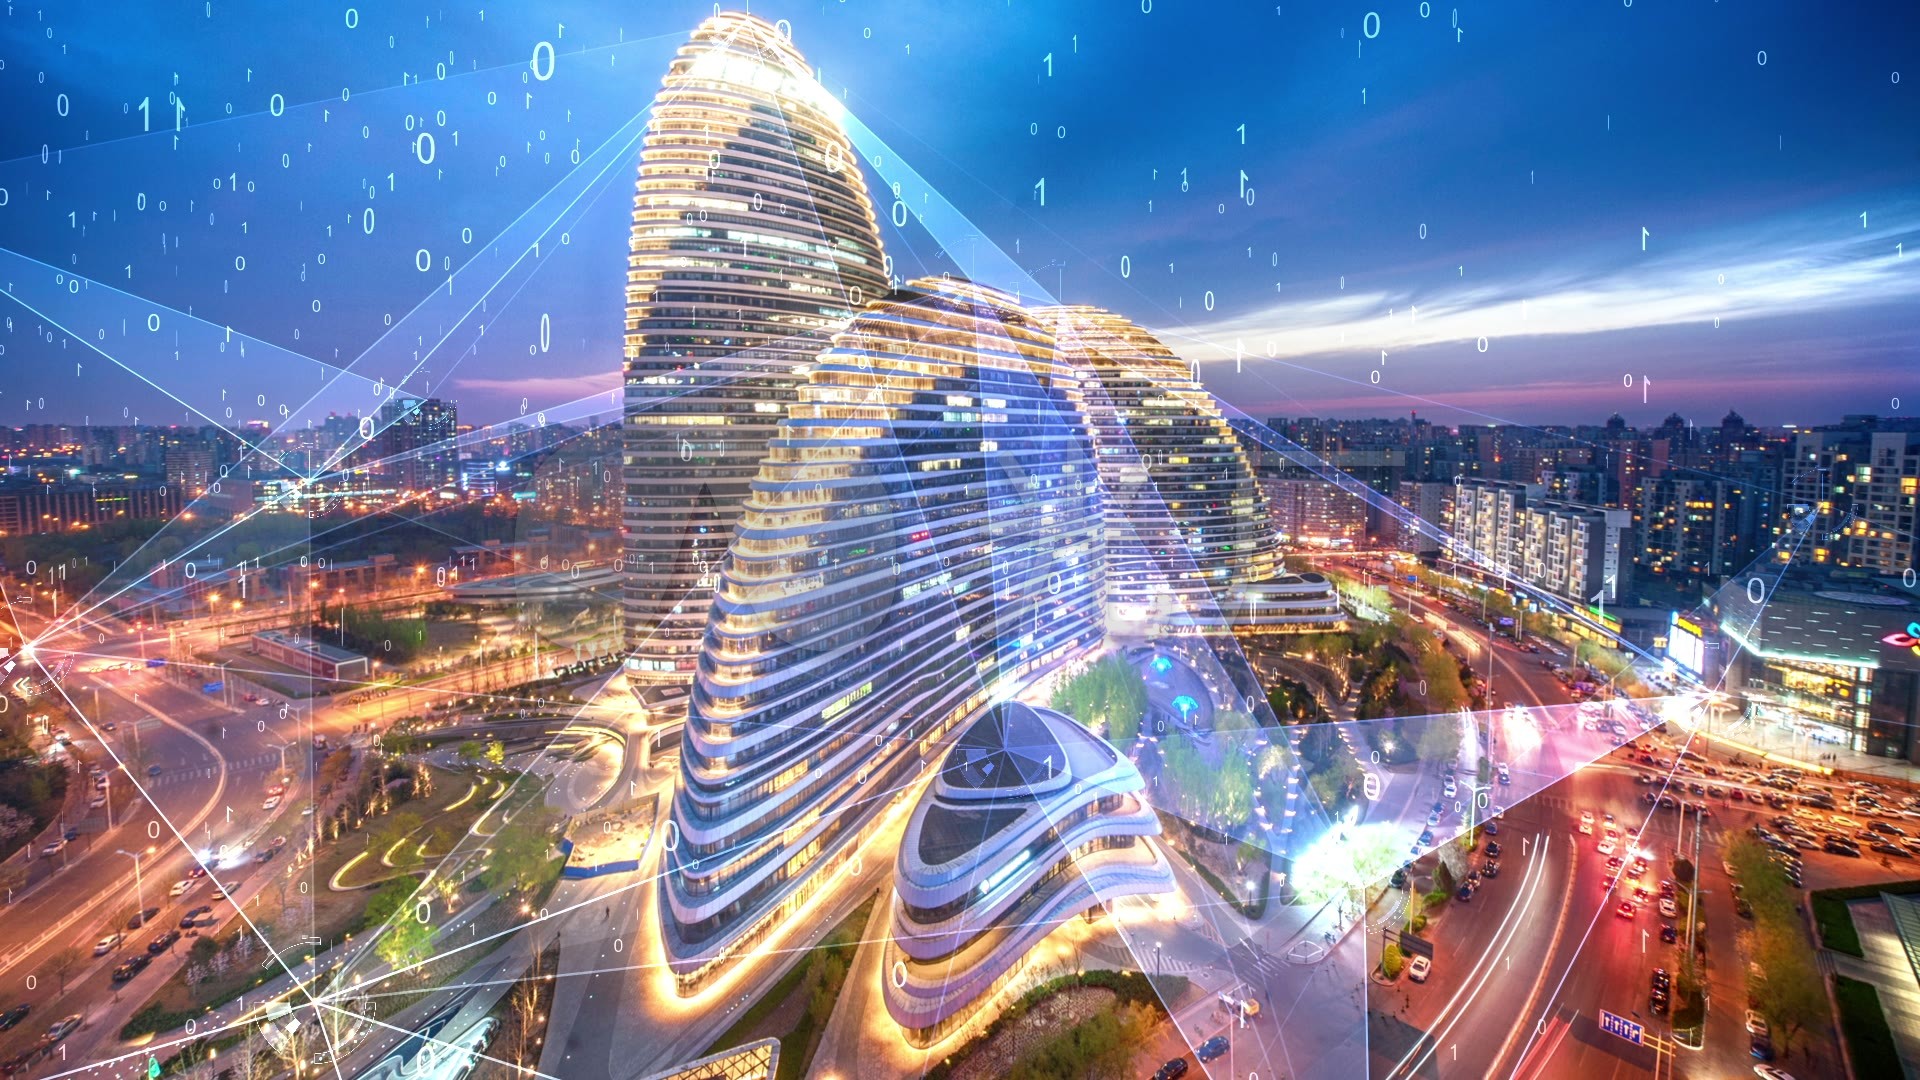 搜建筑网 -- 北京·中国国际贸易中心综合项目---5+design